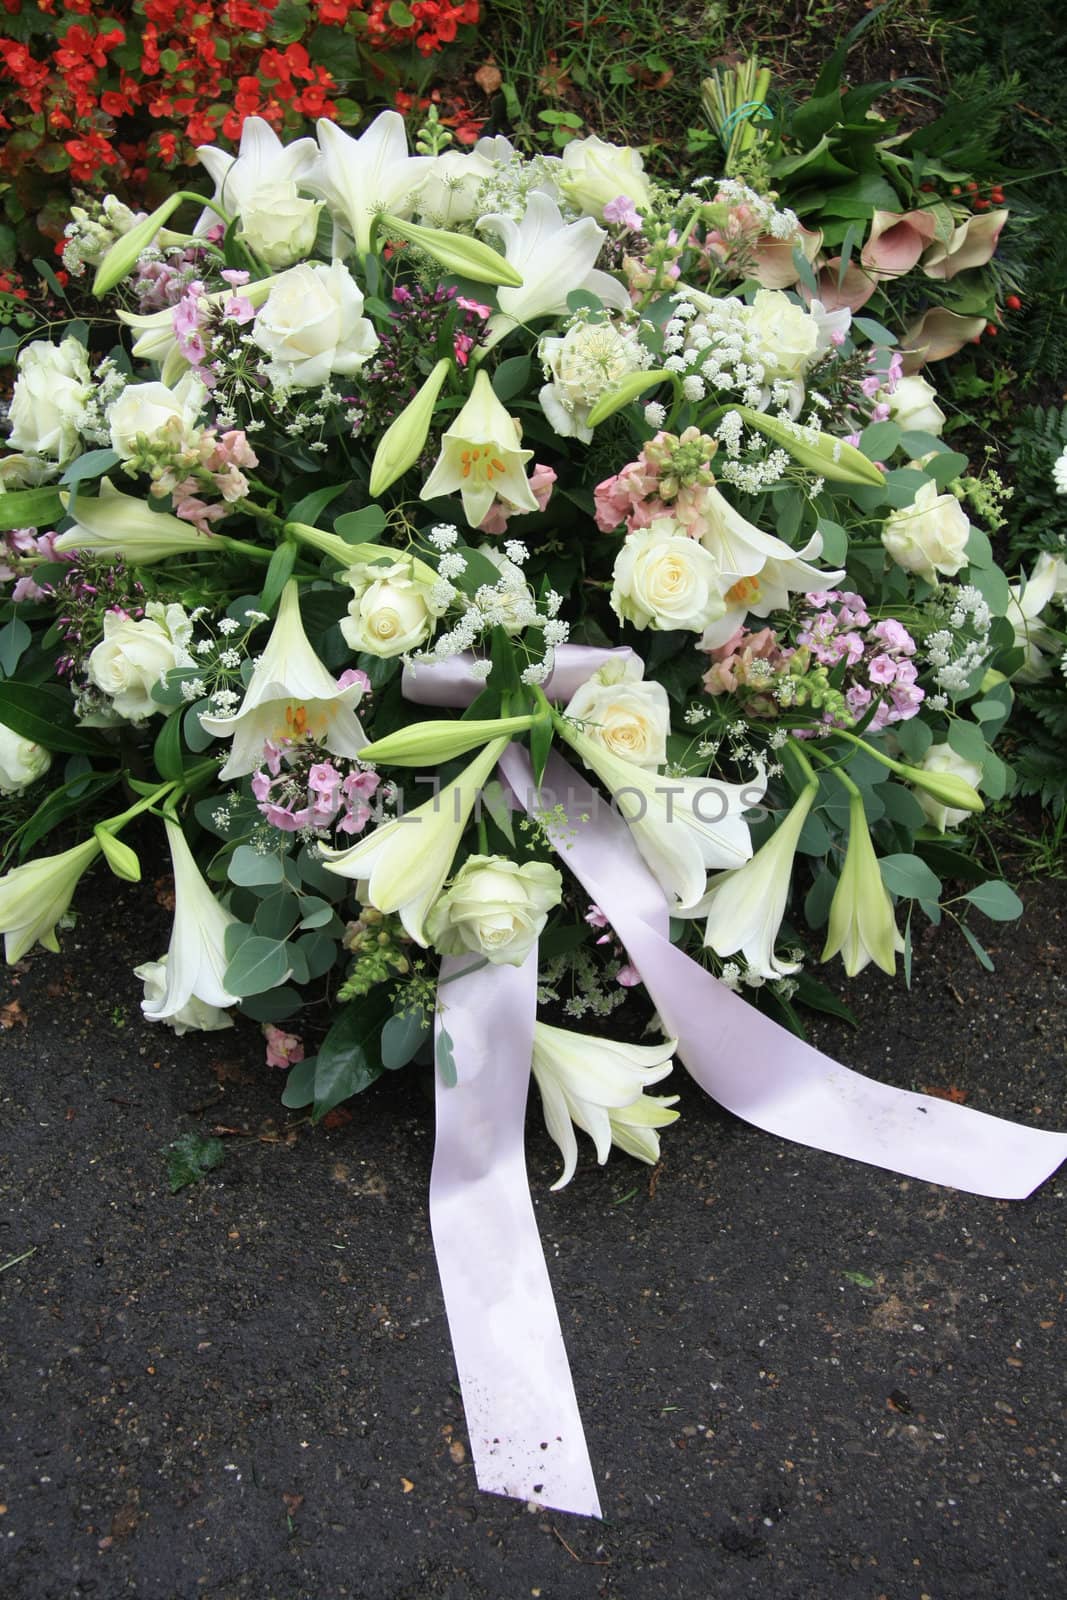 A white sympathy floral arrangement near a grave